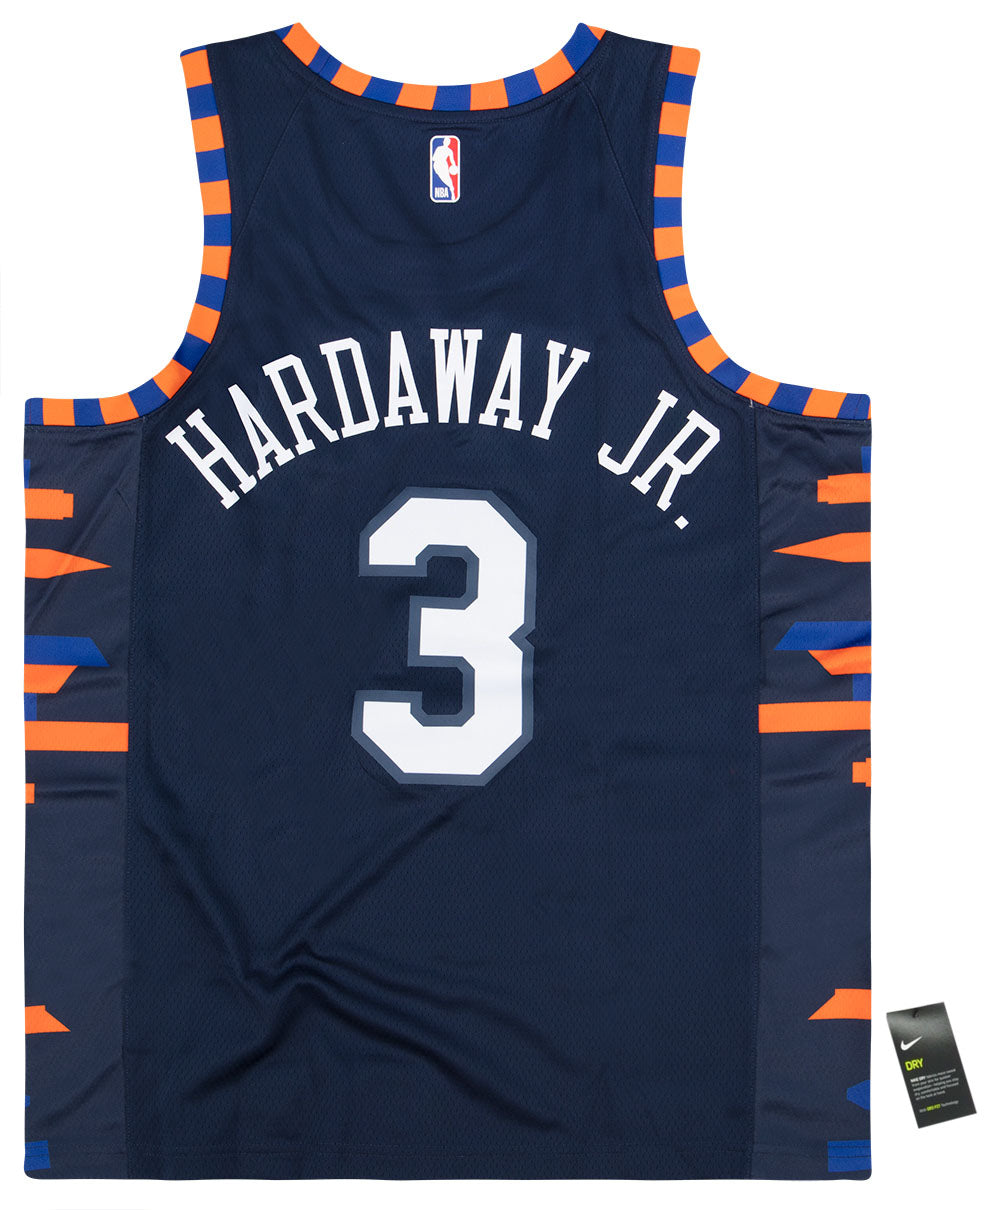 hardaway jr jersey